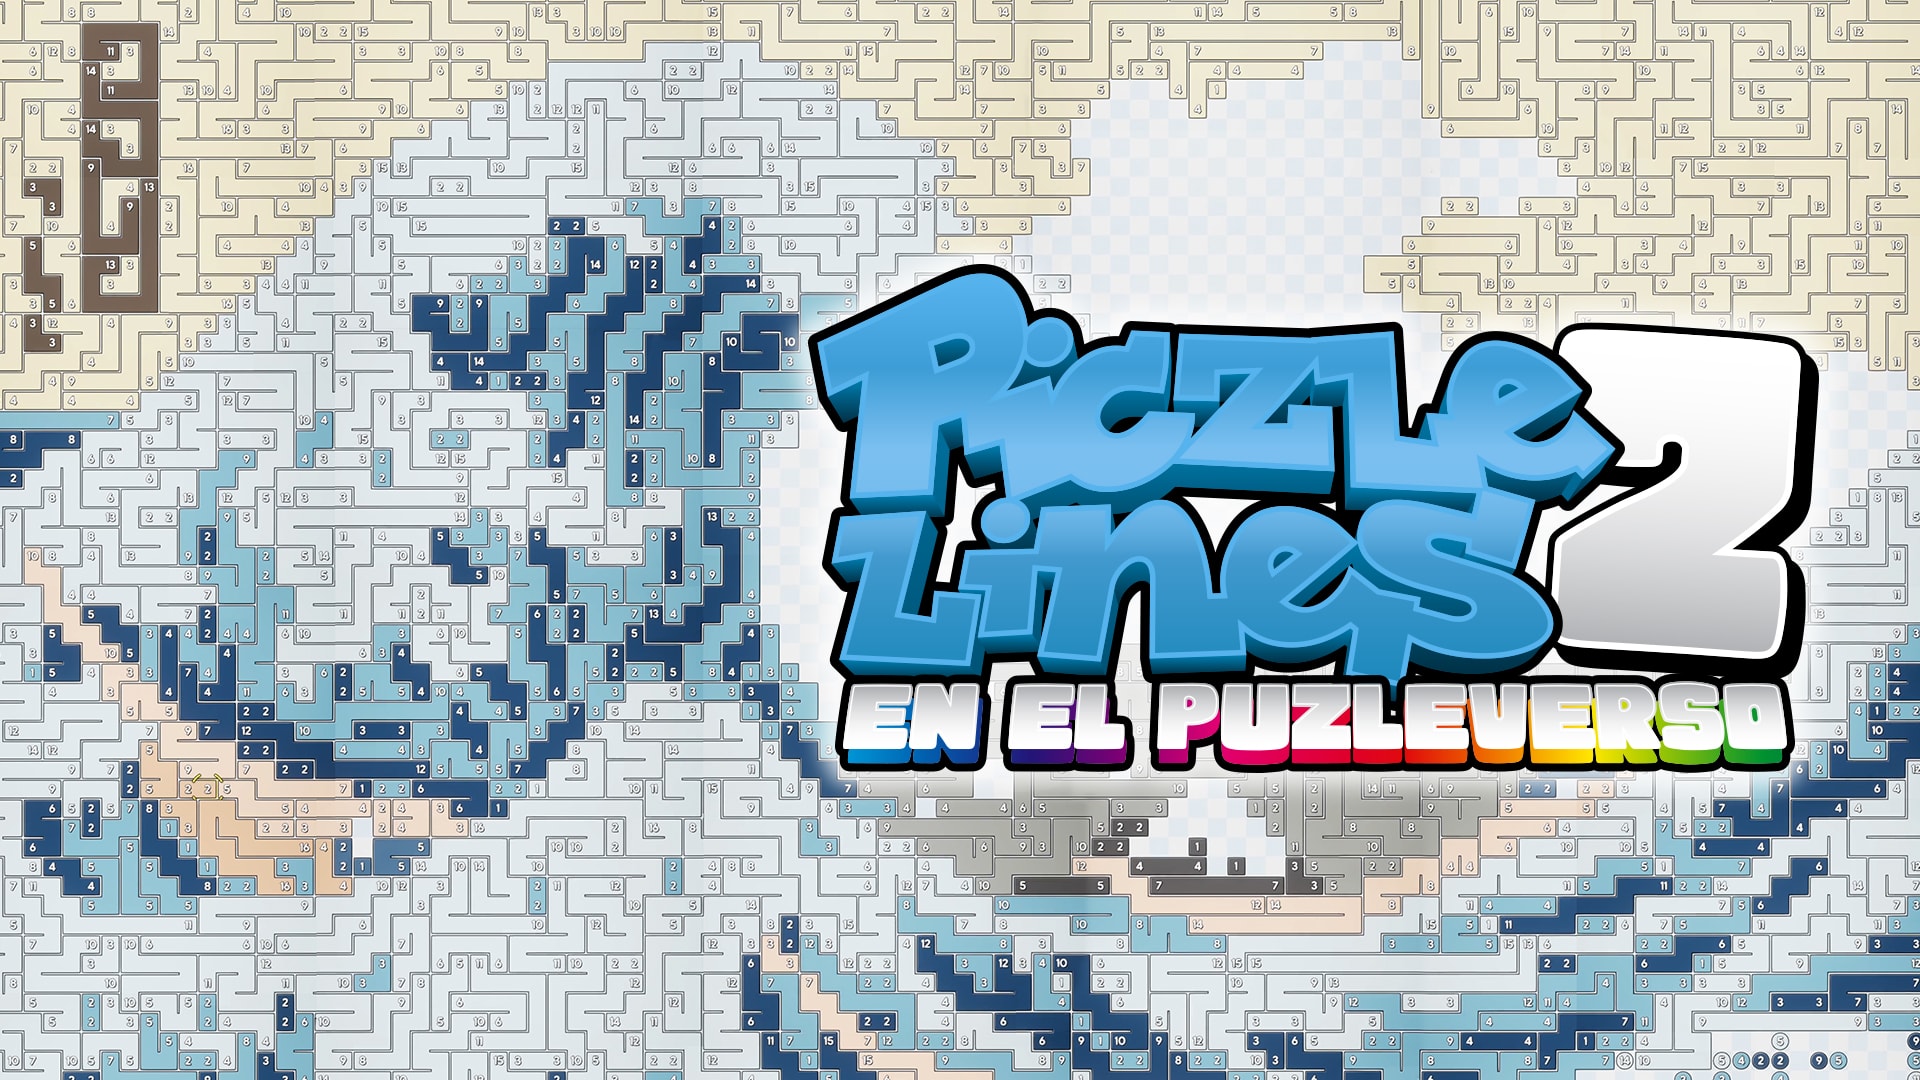 Piczle Lines 2: en el puzleverso